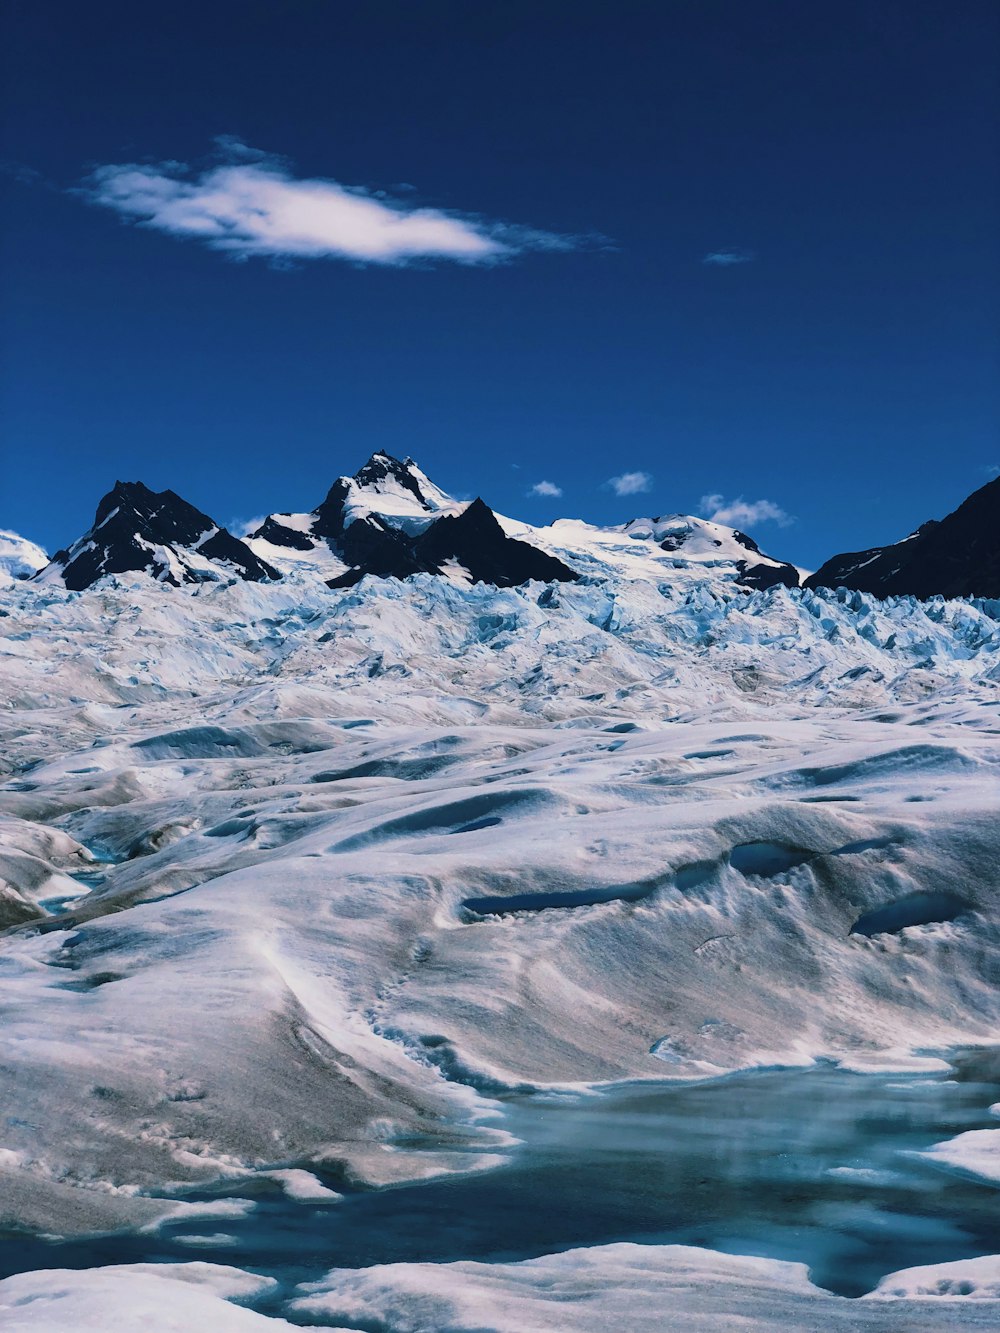 Una veduta di un ghiacciaio con le montagne sullo sfondo